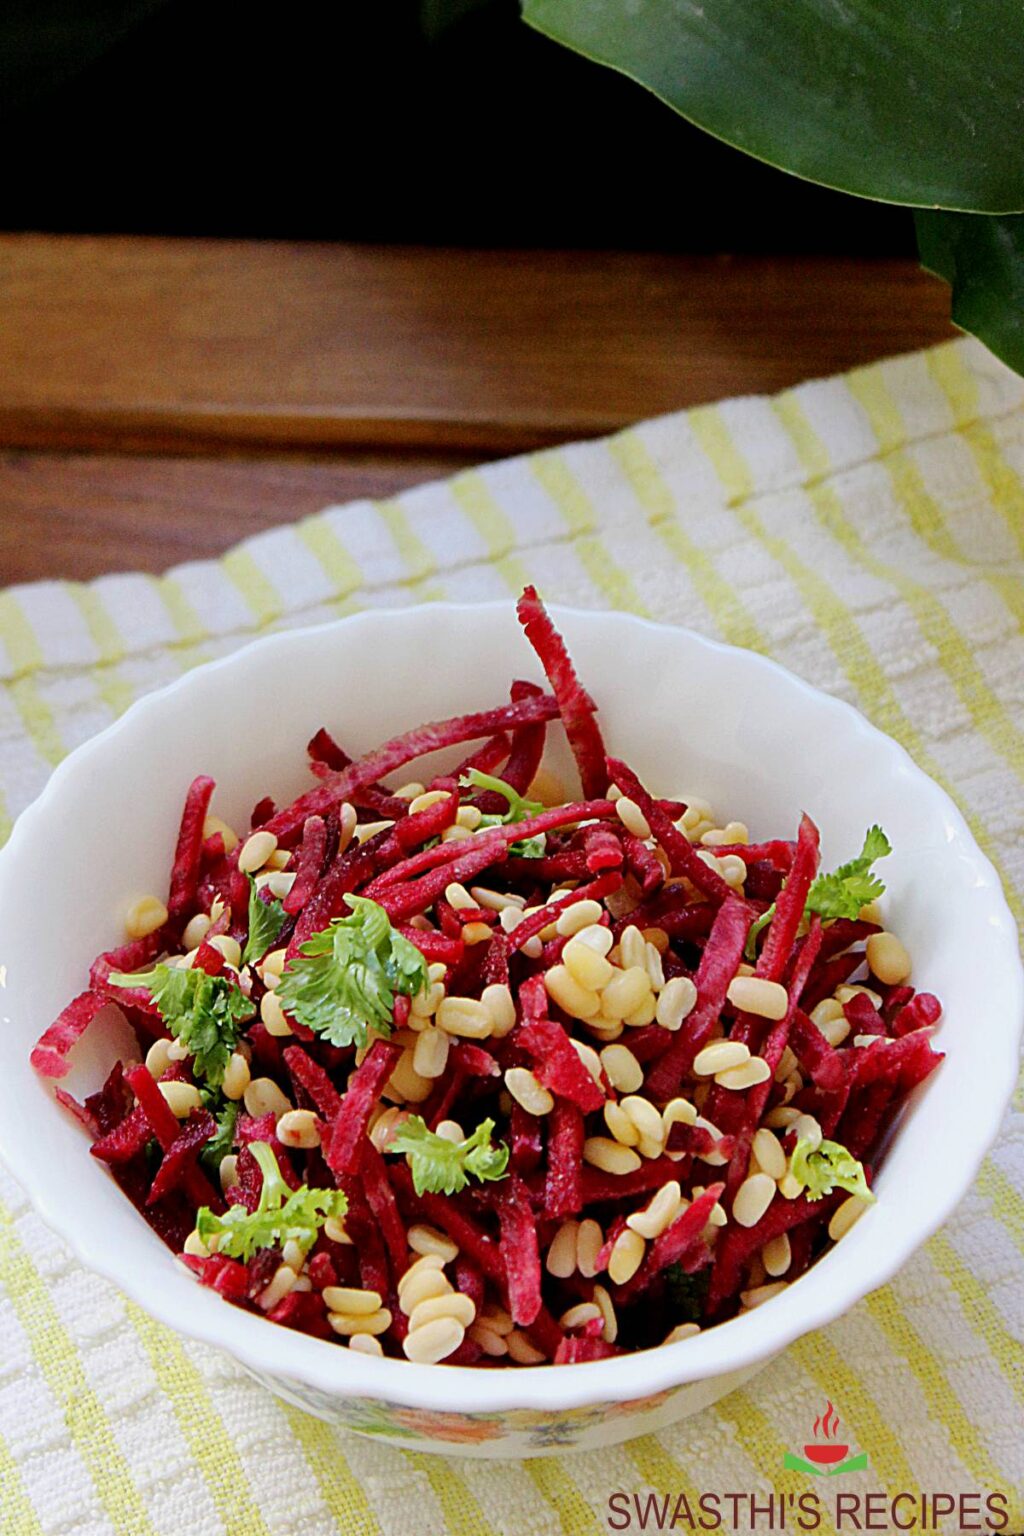 Beetroot salad recipe (vegan & gluten-free) - Swasthi's Recipes